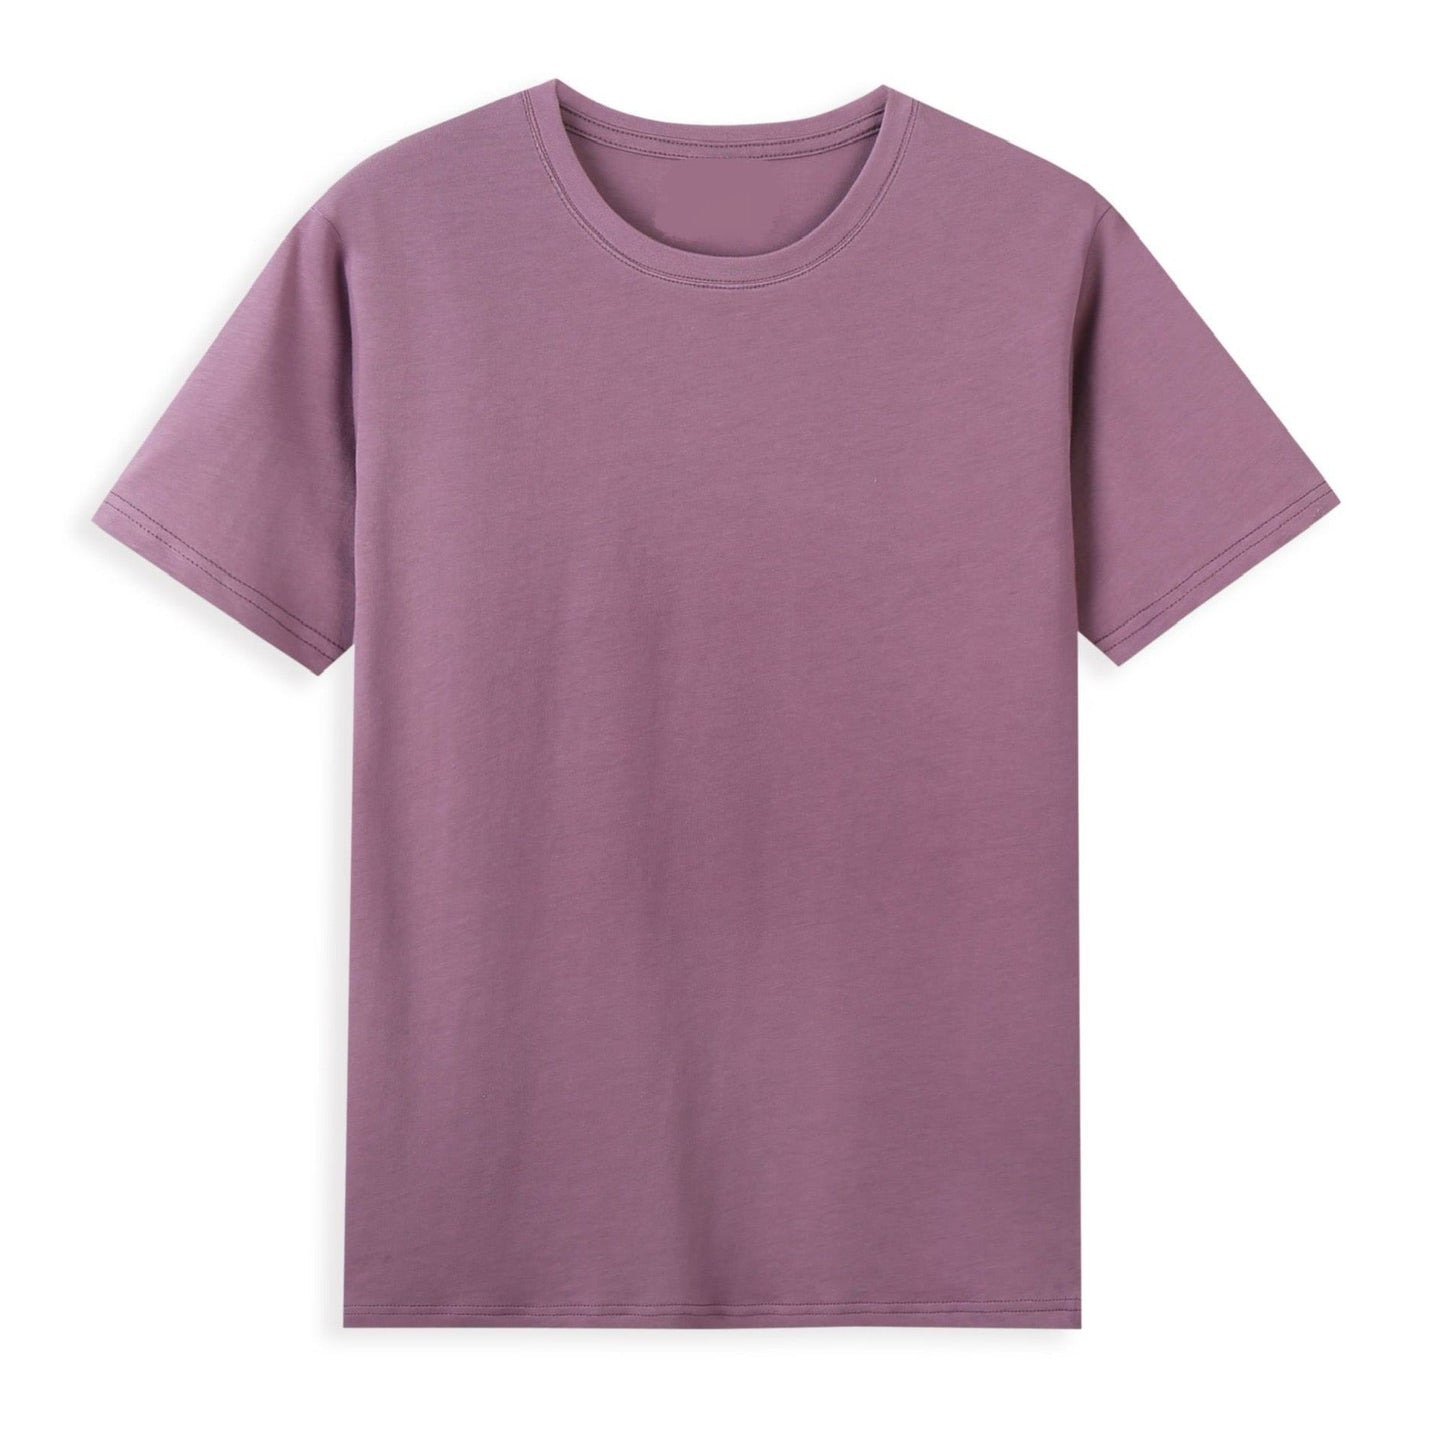 220g Vintage Violet T-shirt